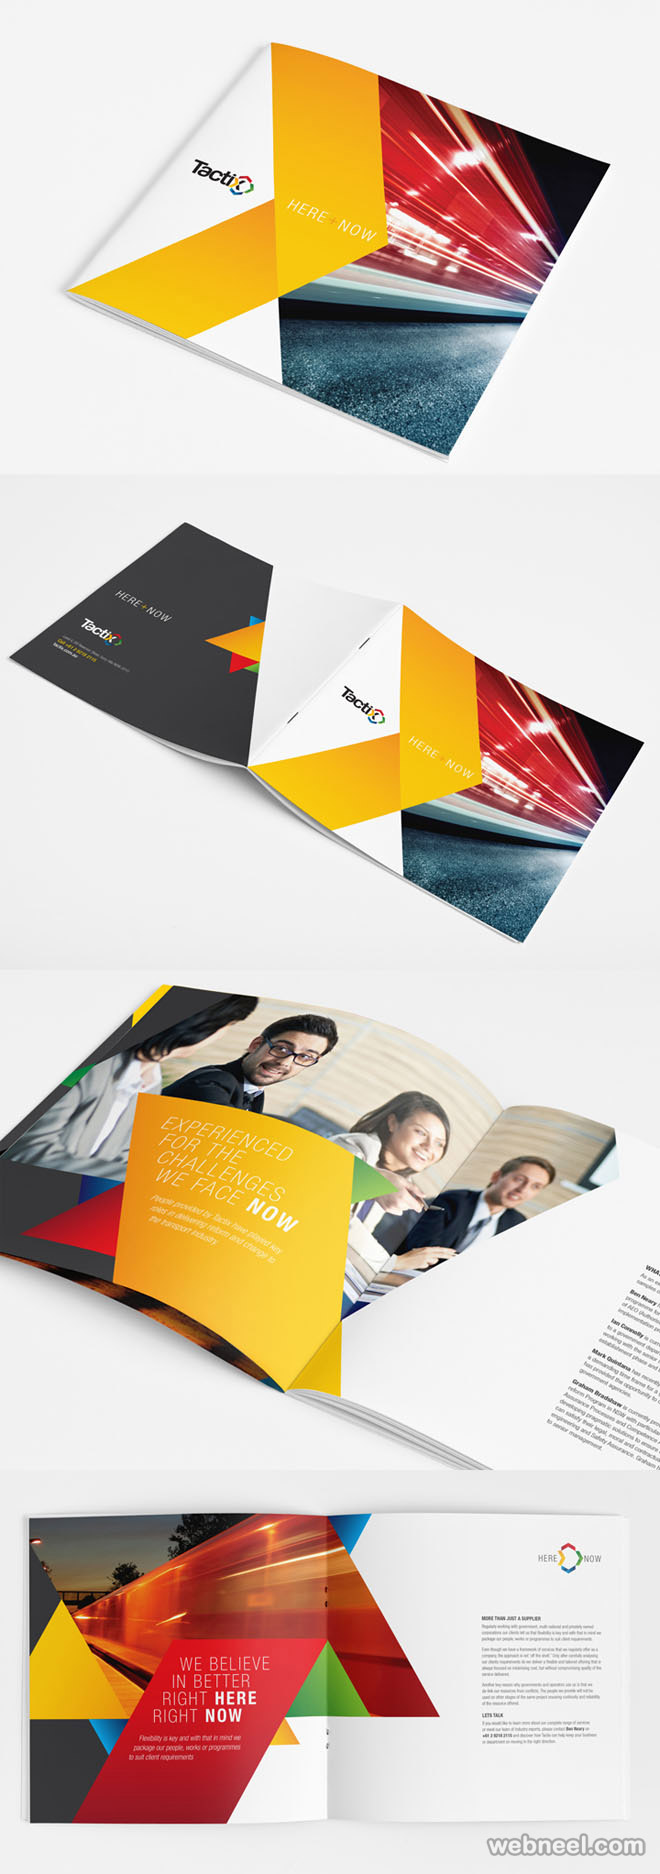 brochure design by brynmorgan